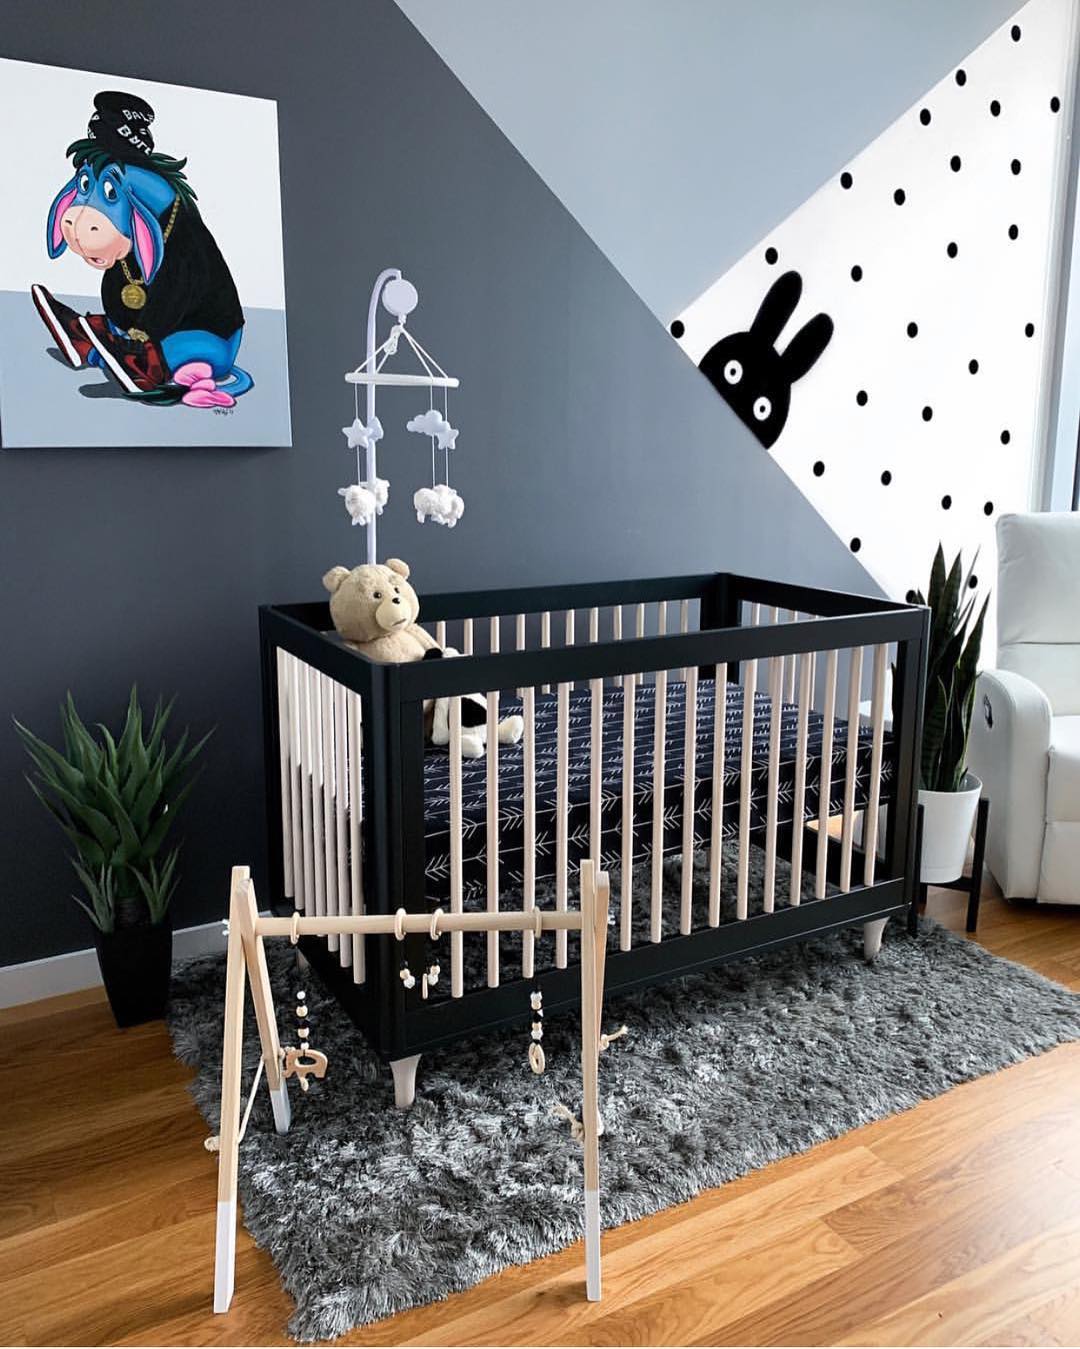 Papéis de parede geométricos: inspirações para montar um quarto de bebê  especial - Blog Moda InfantilBlog Moda Infantil